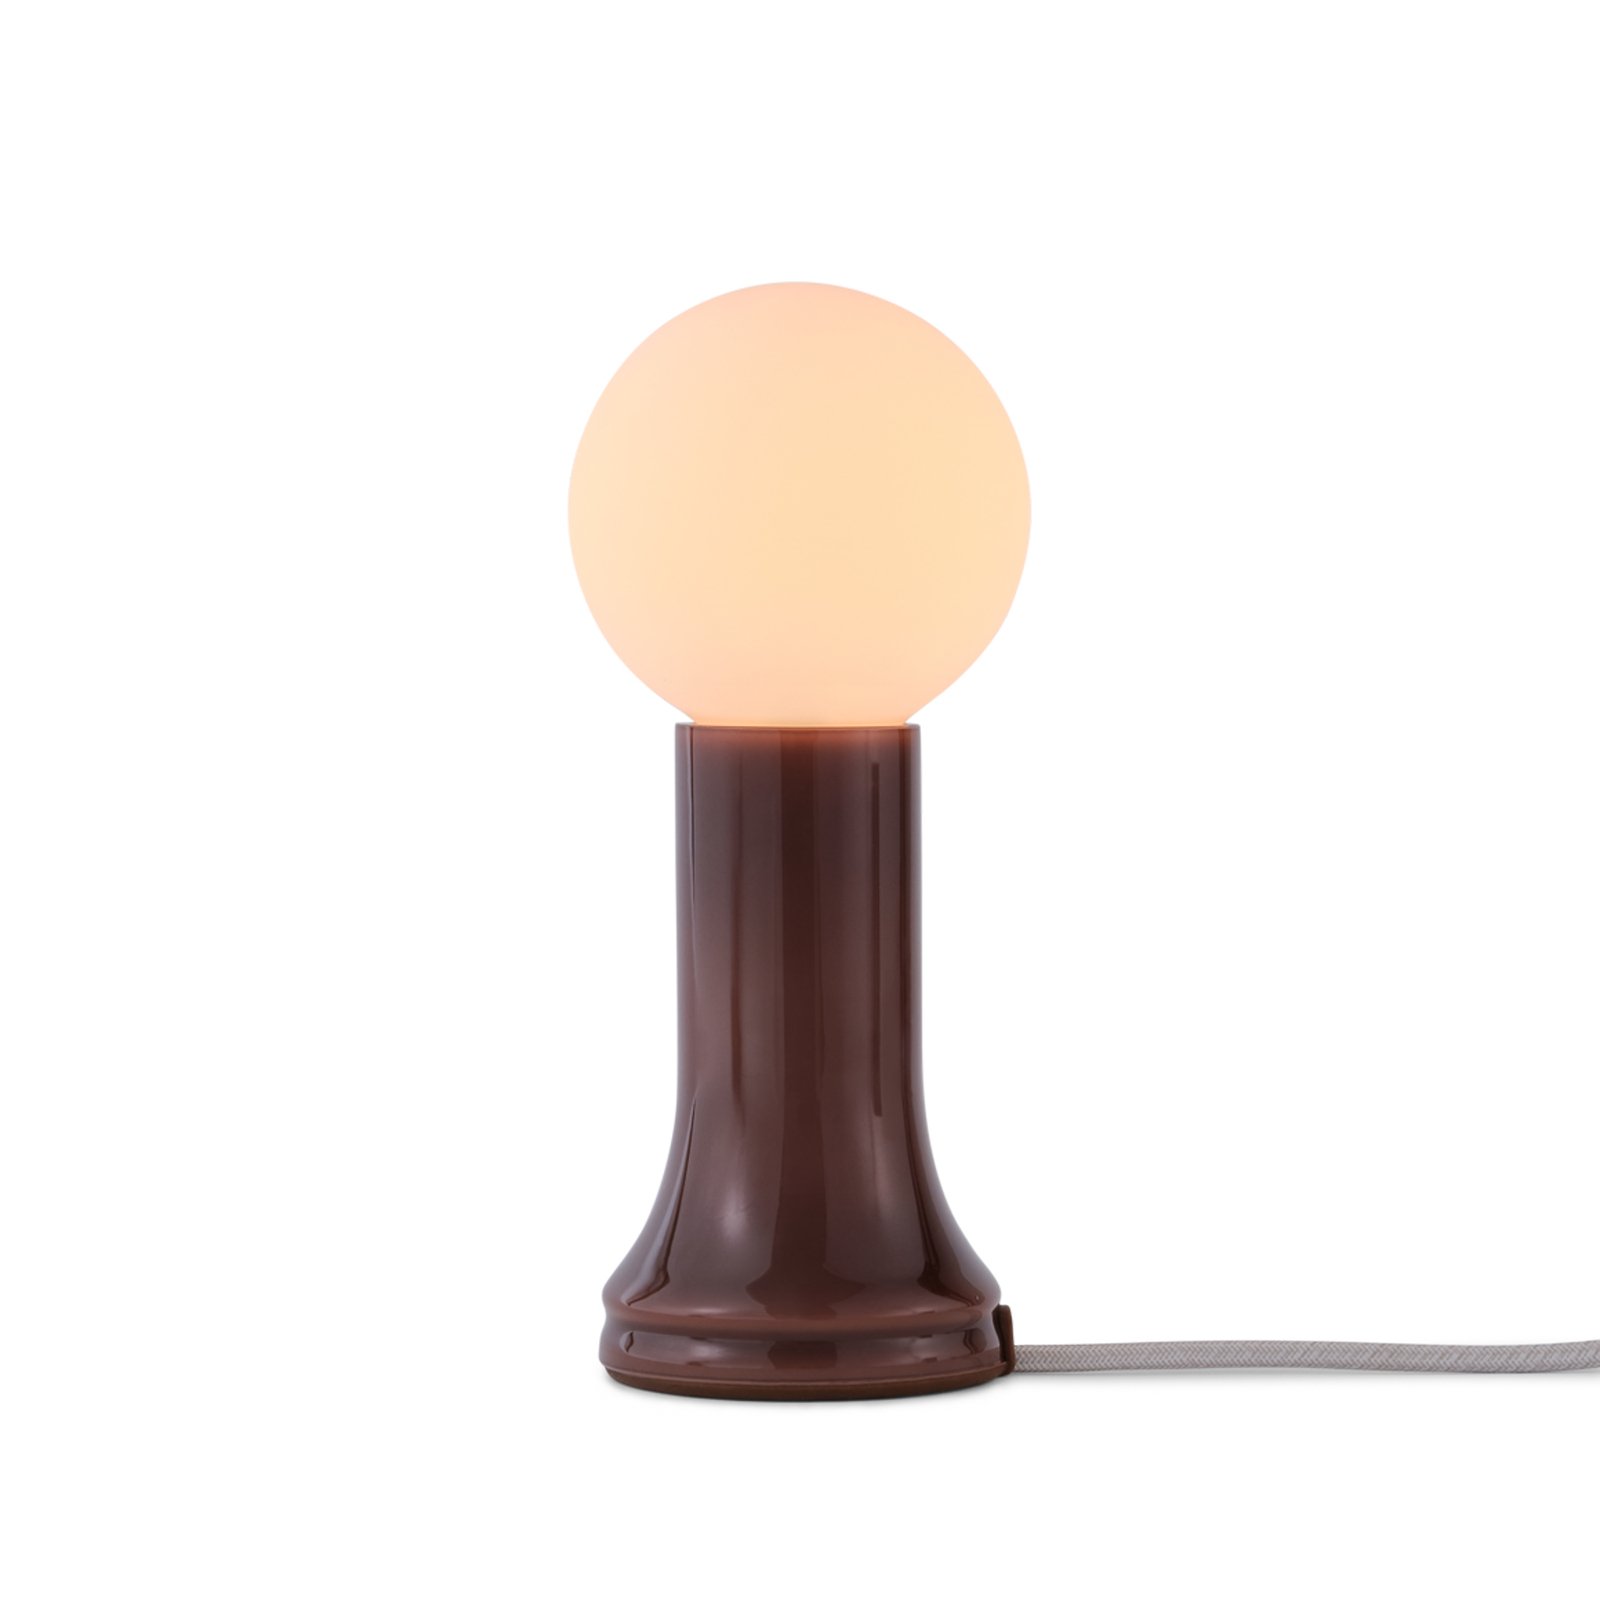 Tala tafellamp Shore, glas, E27 LED lamp Globe, bruin